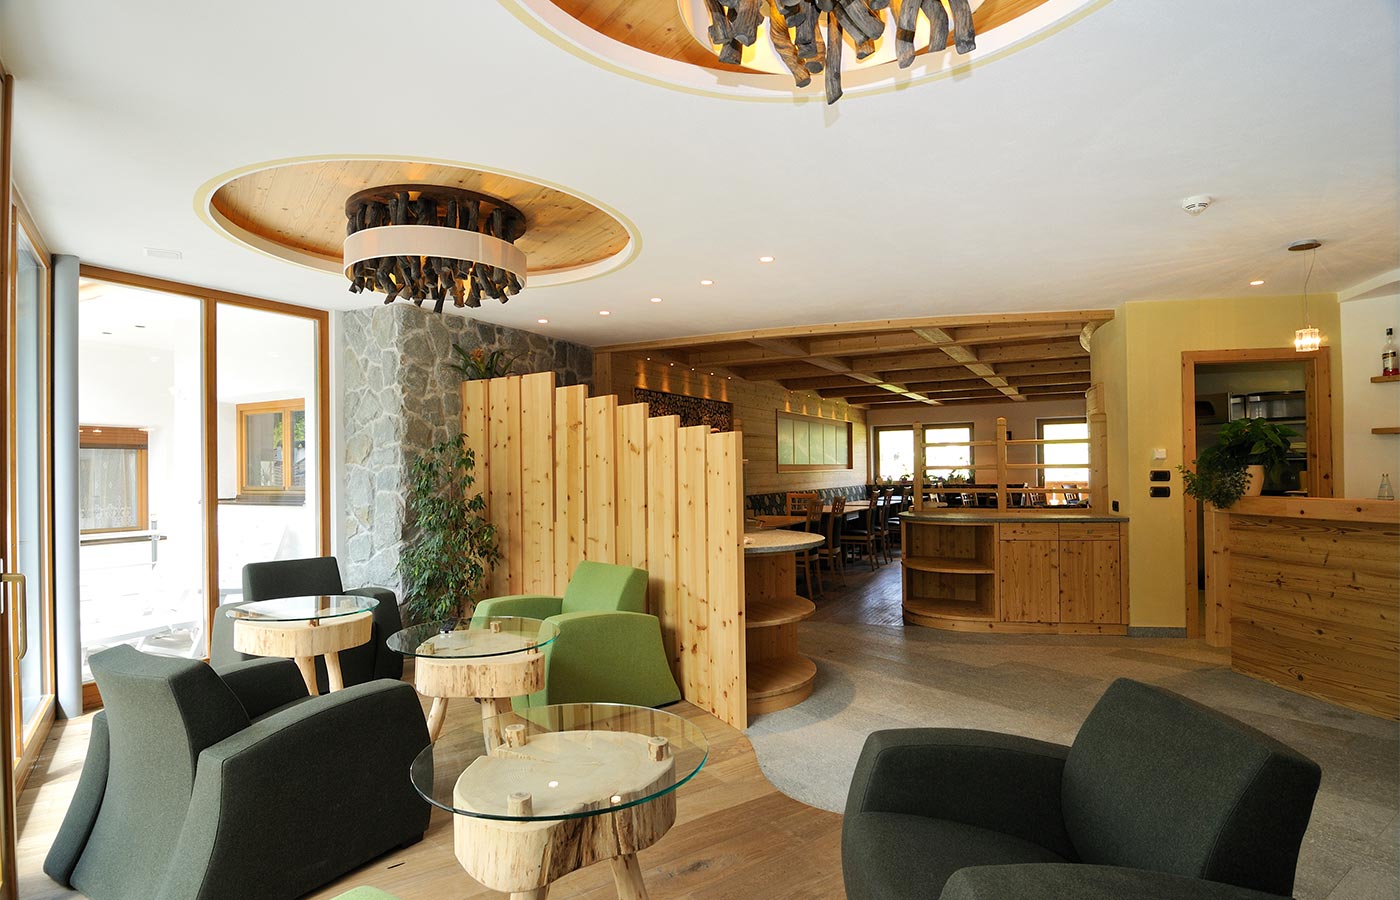 die Bar des Hotel Dlaces, bequeme Sessel in Grüntönen in einem modernen Ambiente aus Holz